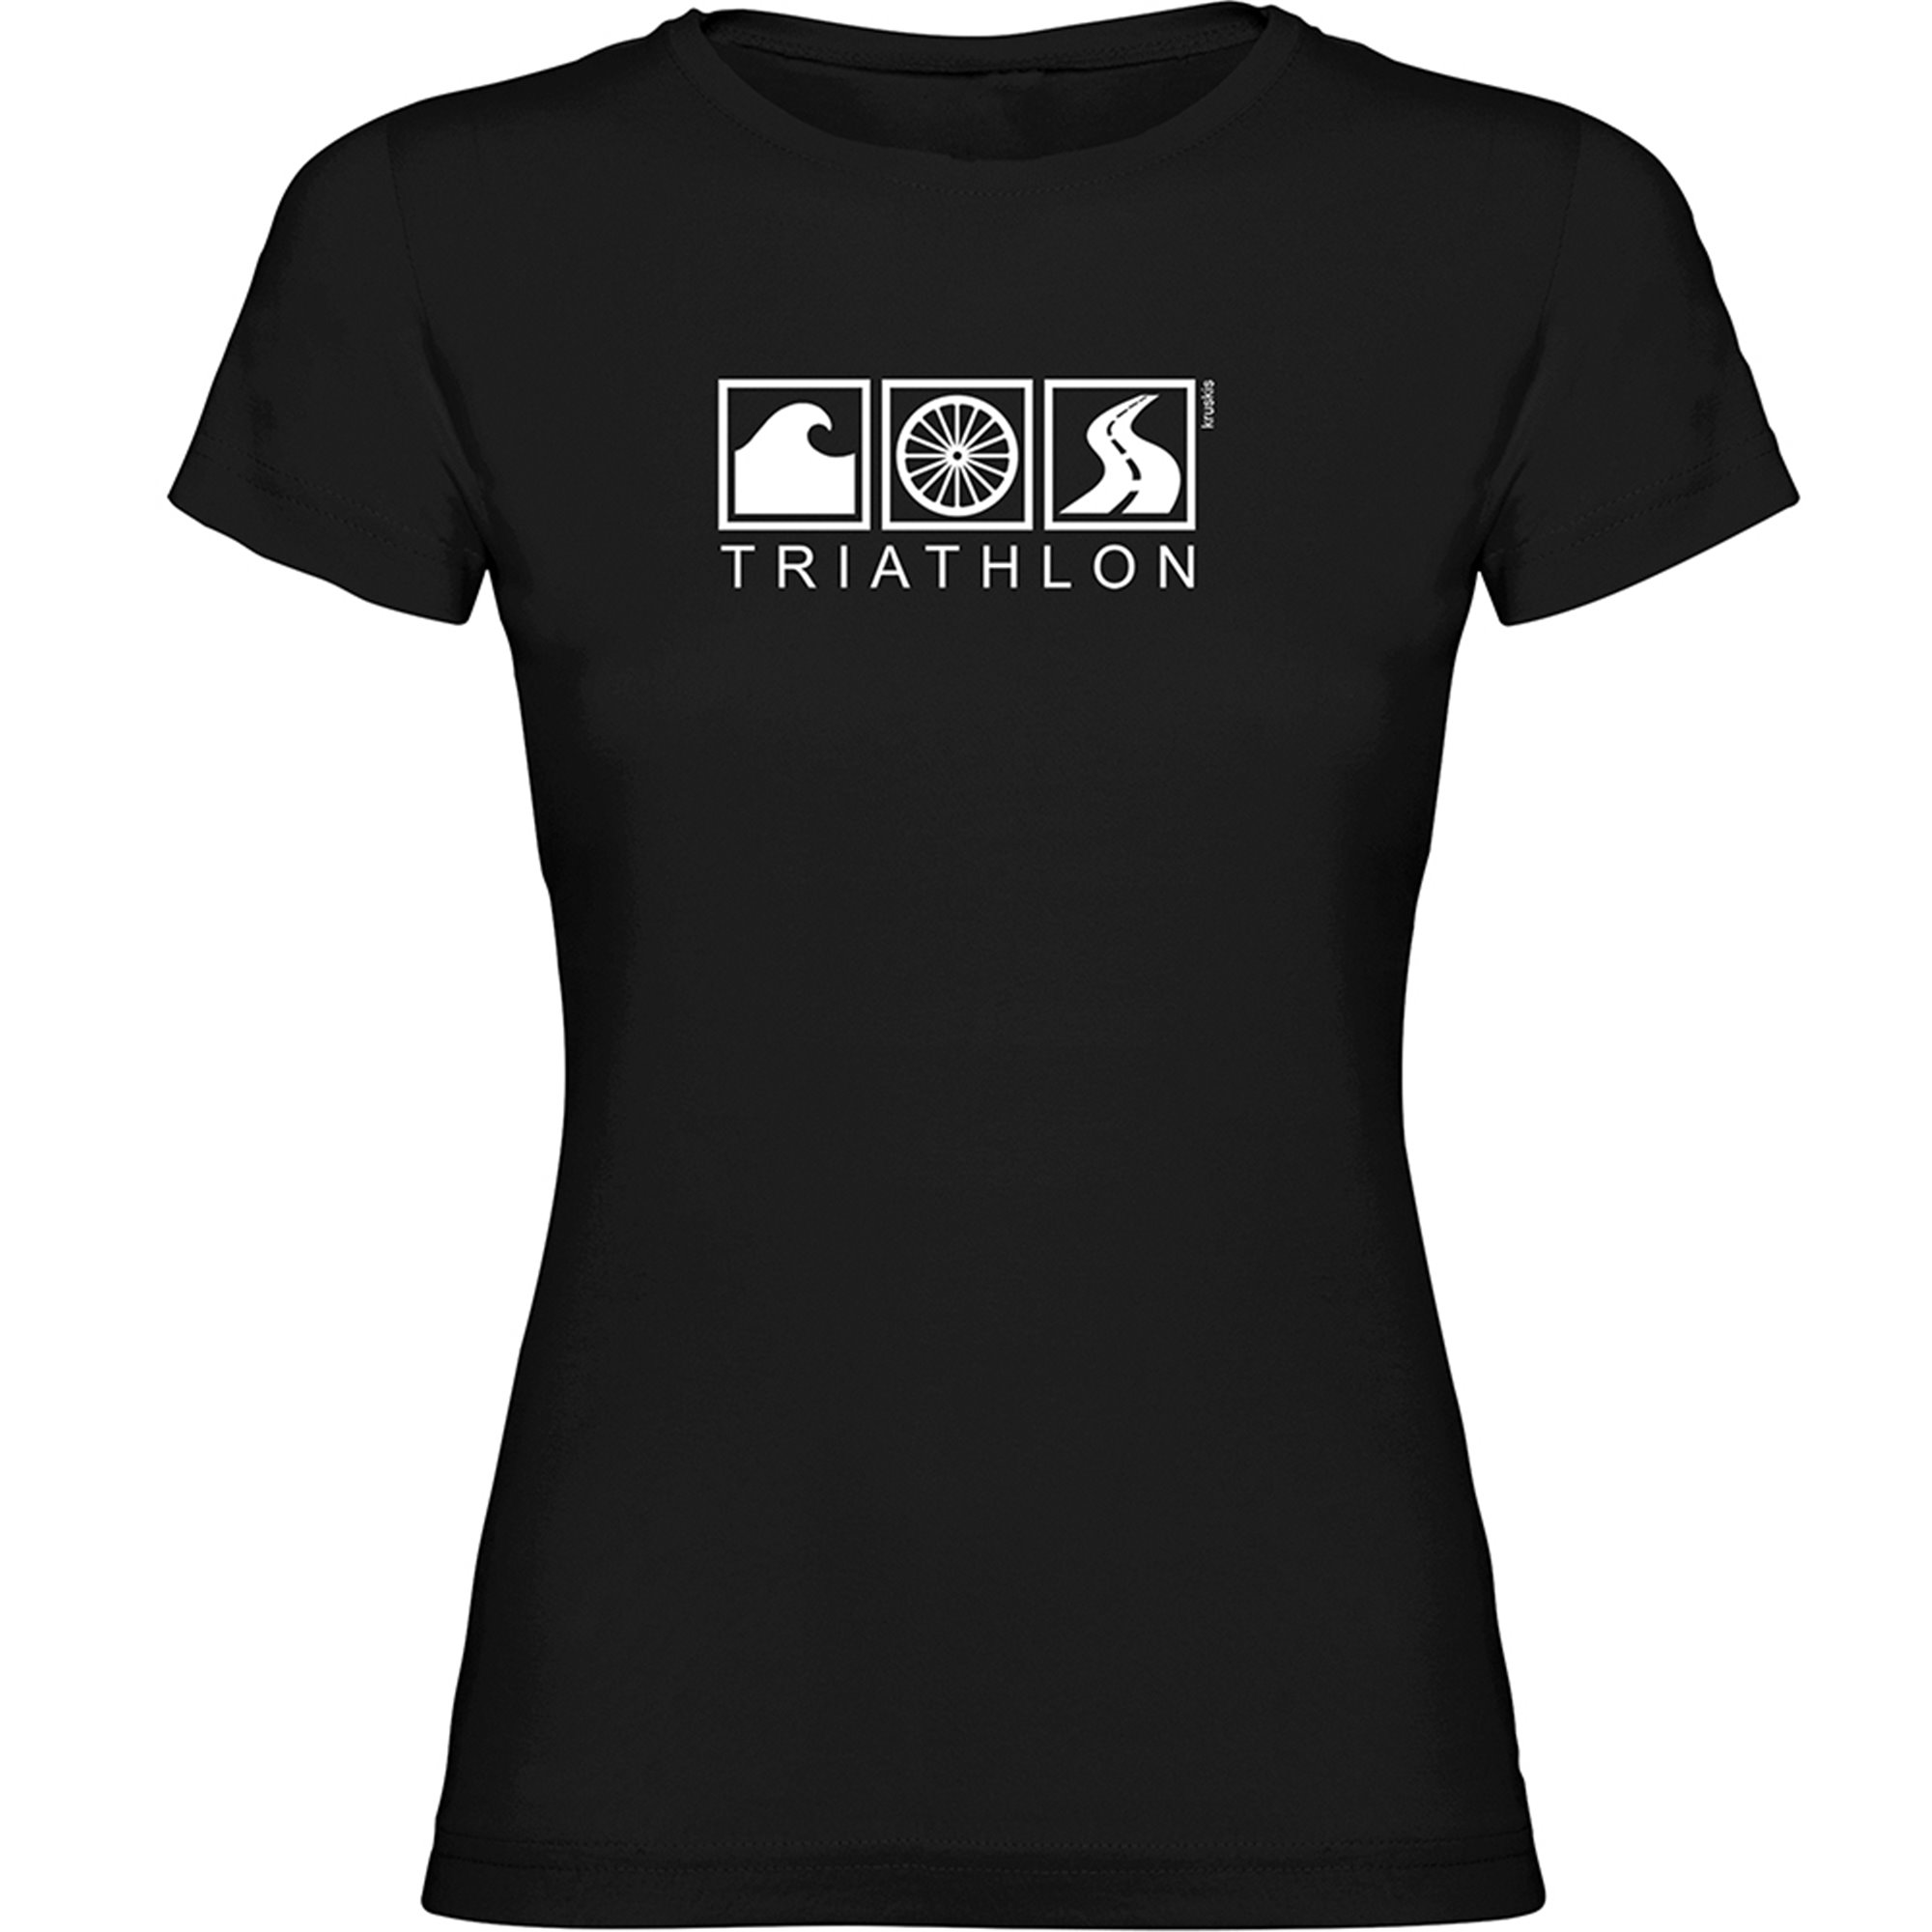 T shirt Running Triathlon Short Sleeves Woman